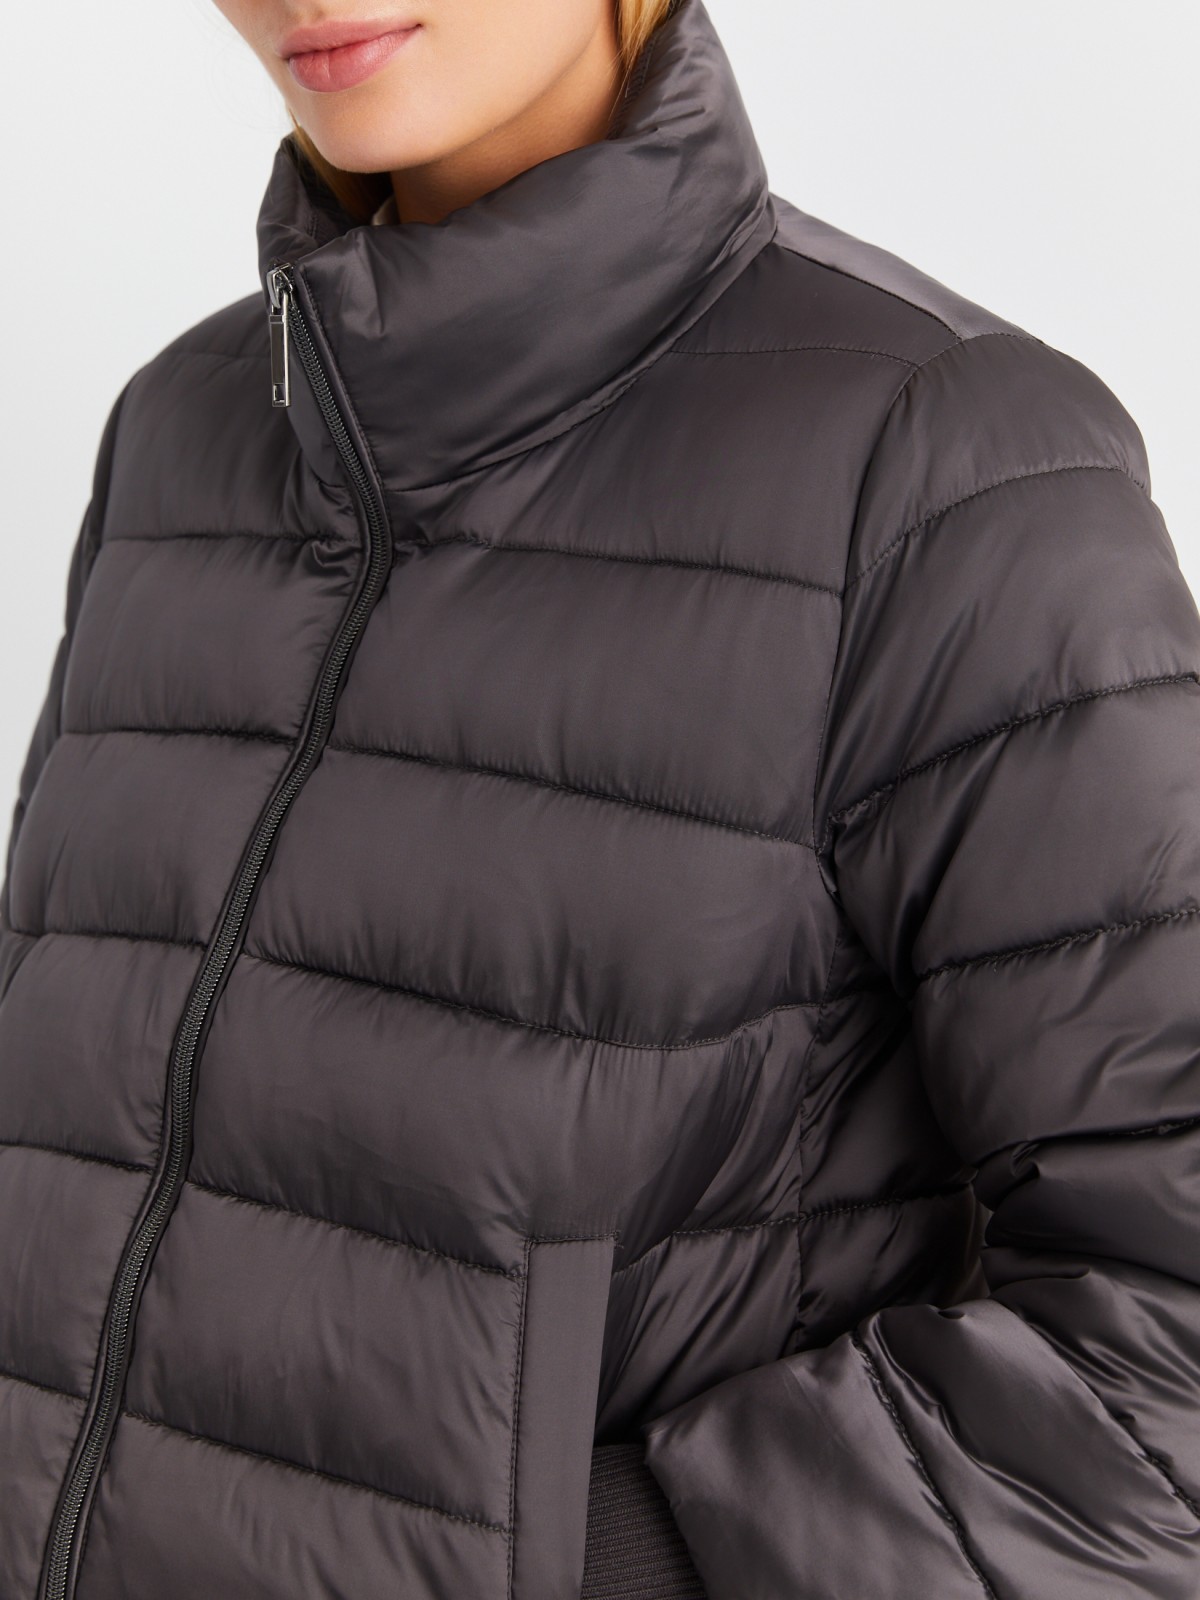 Тёплая укороченная куртка с воротником-стойкой и трикотажными манжетами zolla 023345102254, цвет темно-серый, размер XS - фото 4